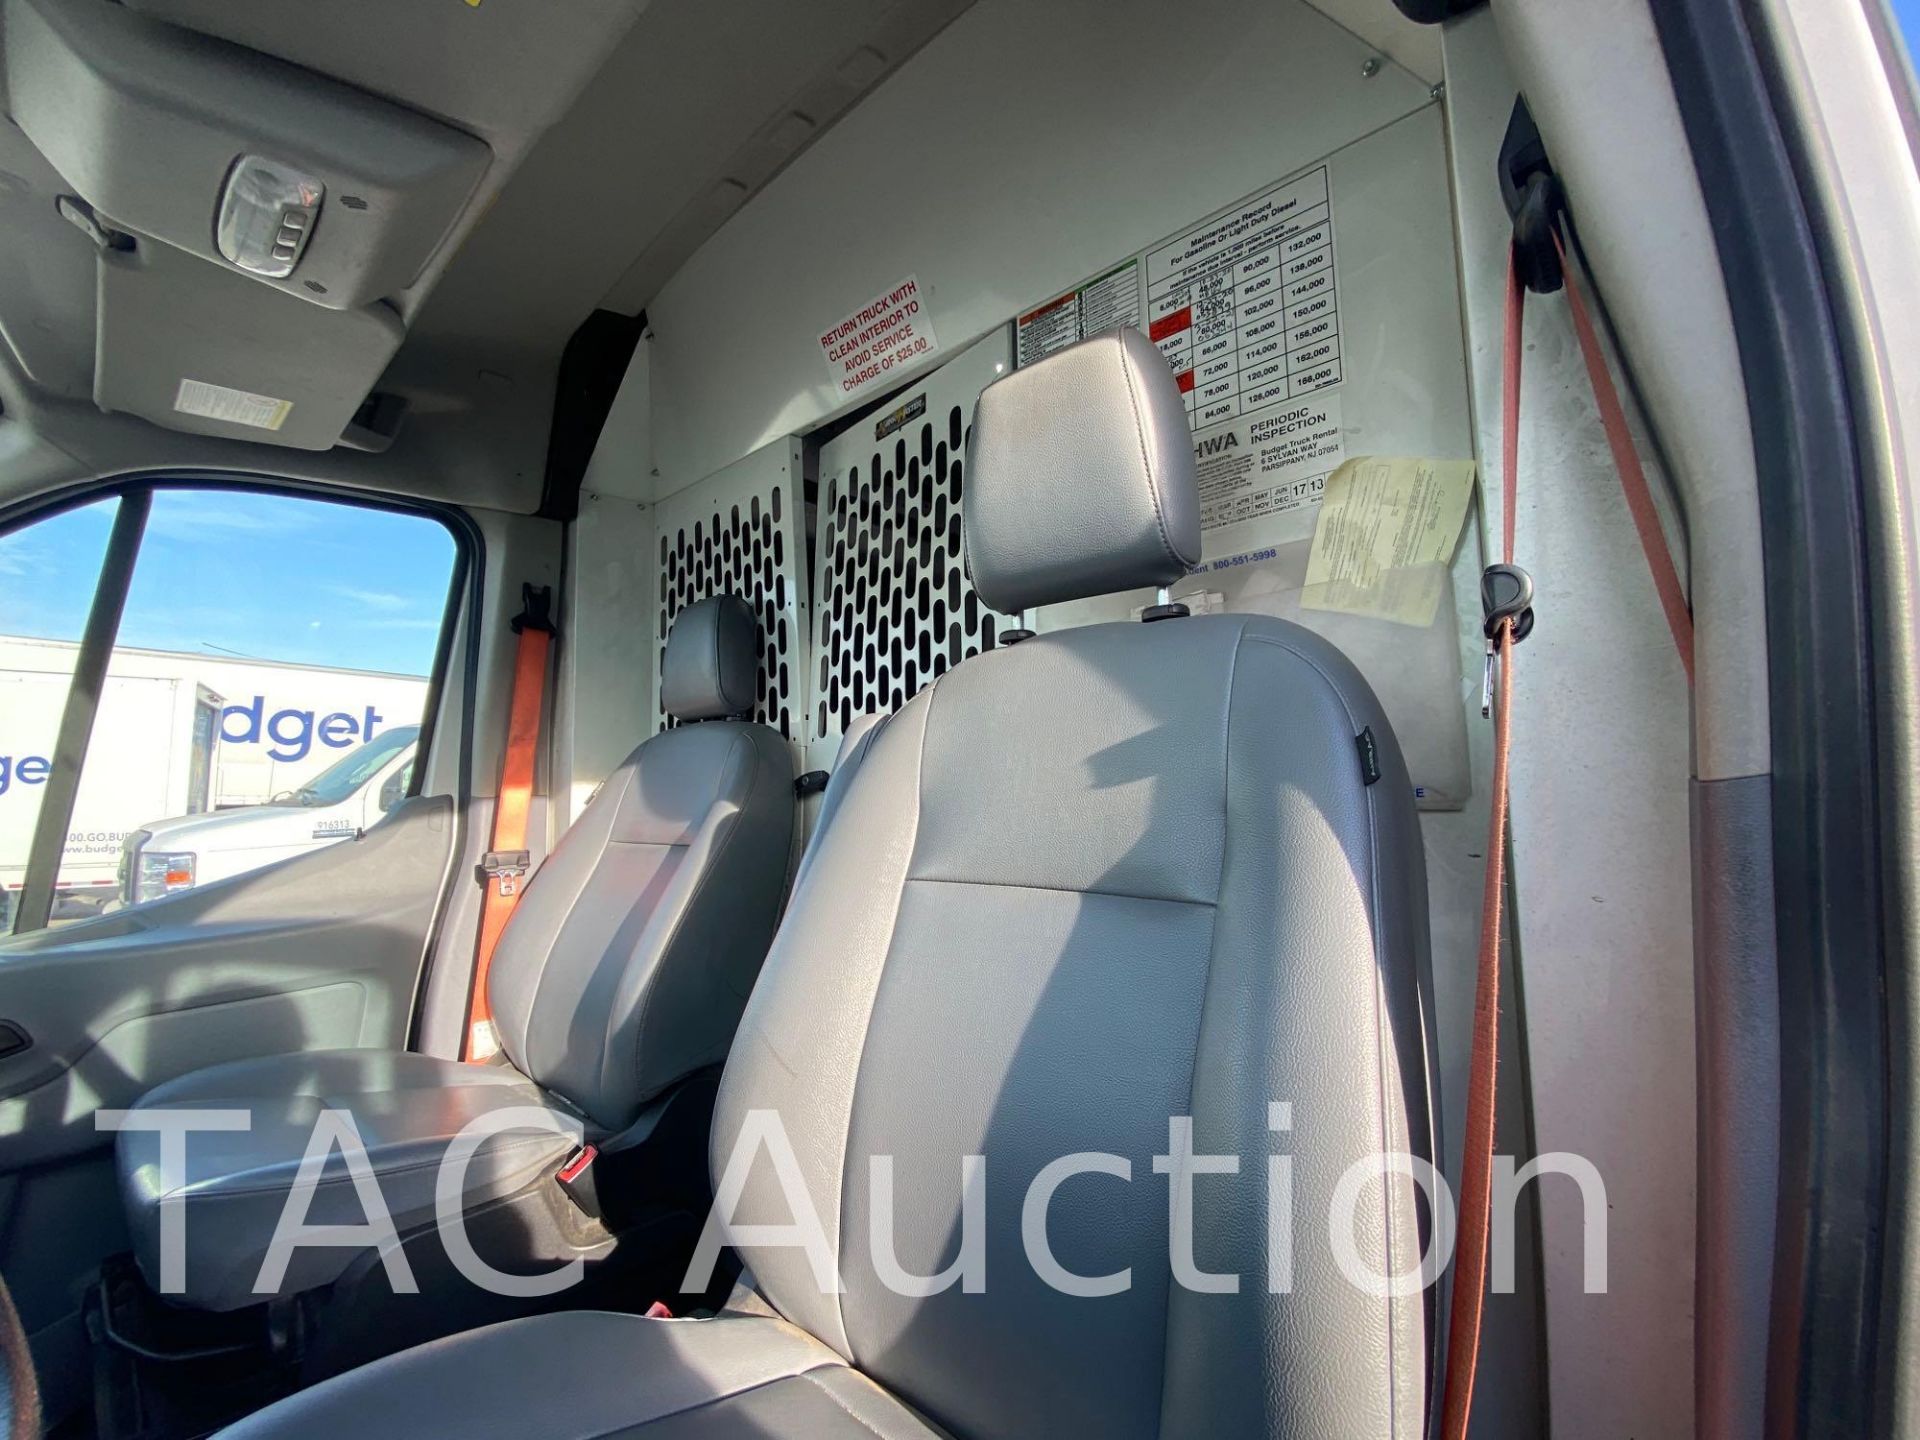 2018 Ford Transit 150 Cargo Van - Image 19 of 53